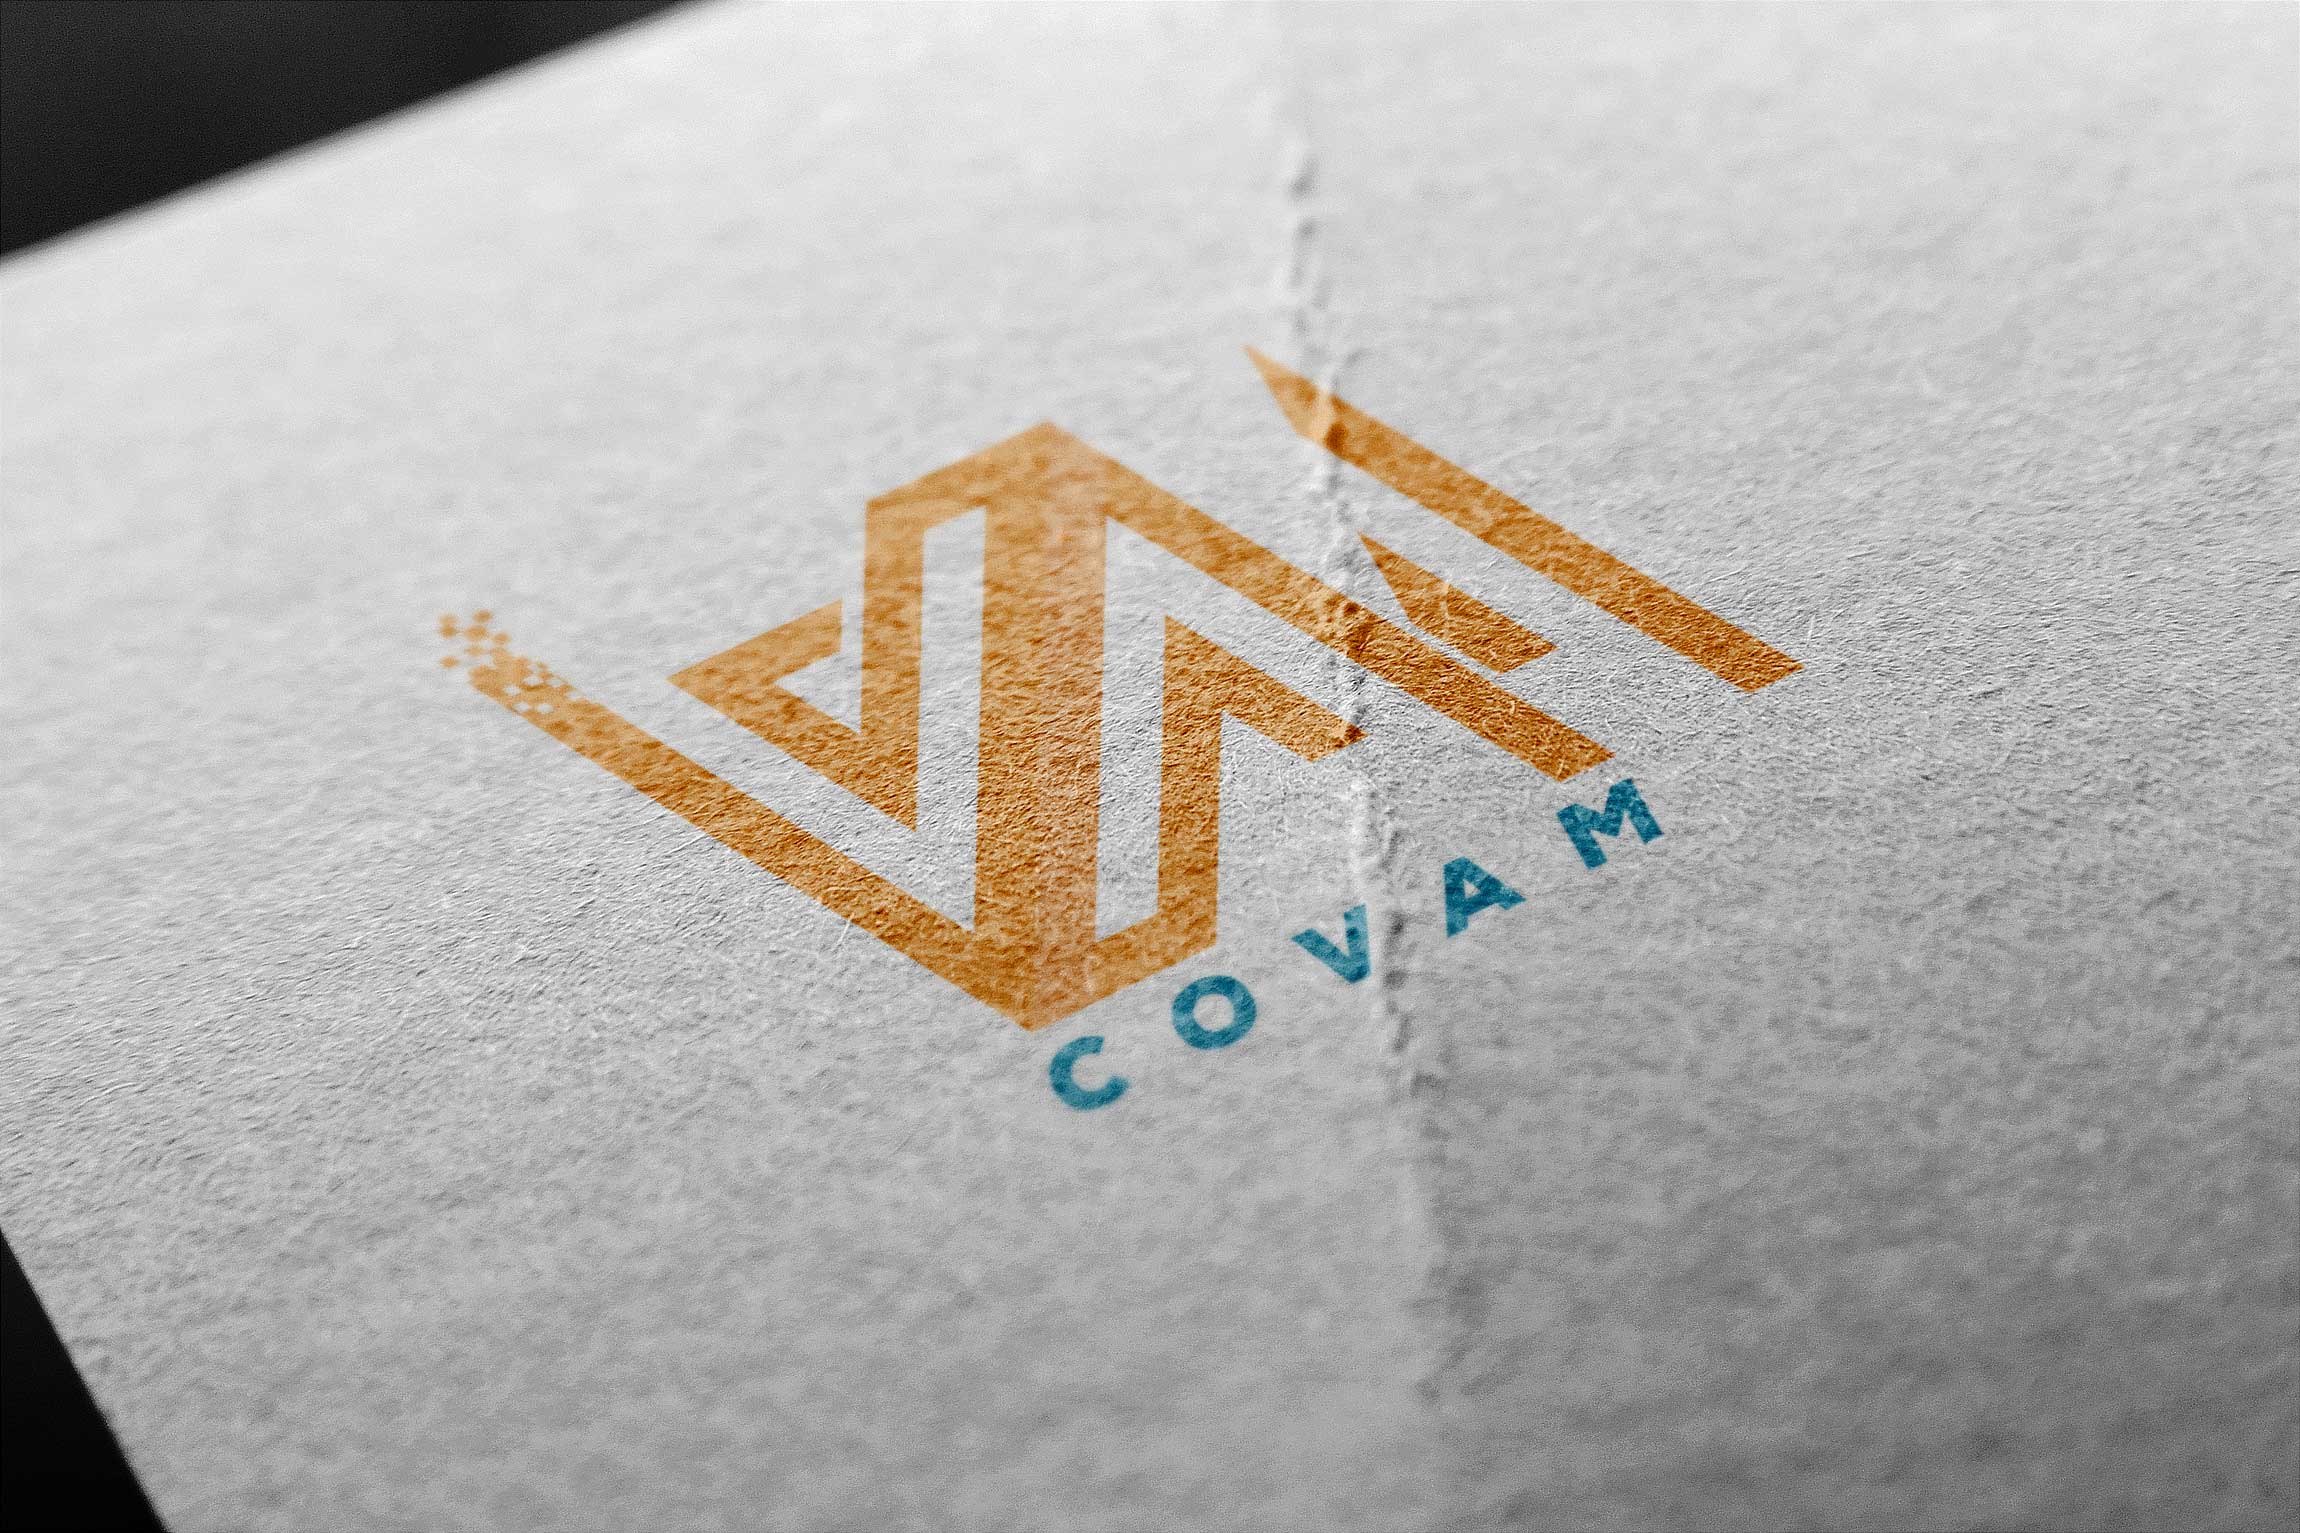 Diseño gráfico imagotipo logotipo logos Covam plataforma web